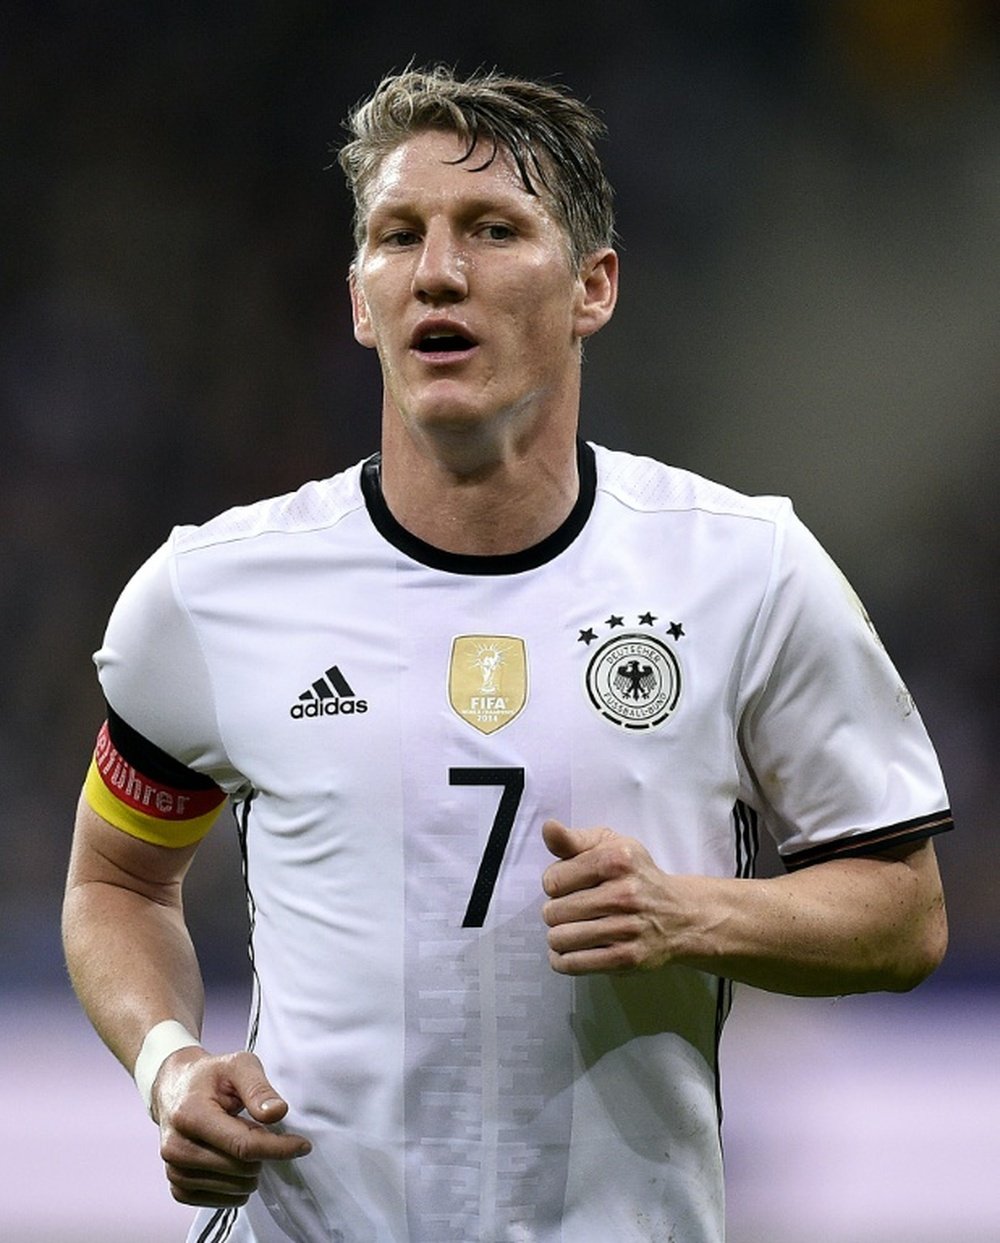 German captain Bastian Schweinsteiger will miss friendlies due to injuries. BeSoccer